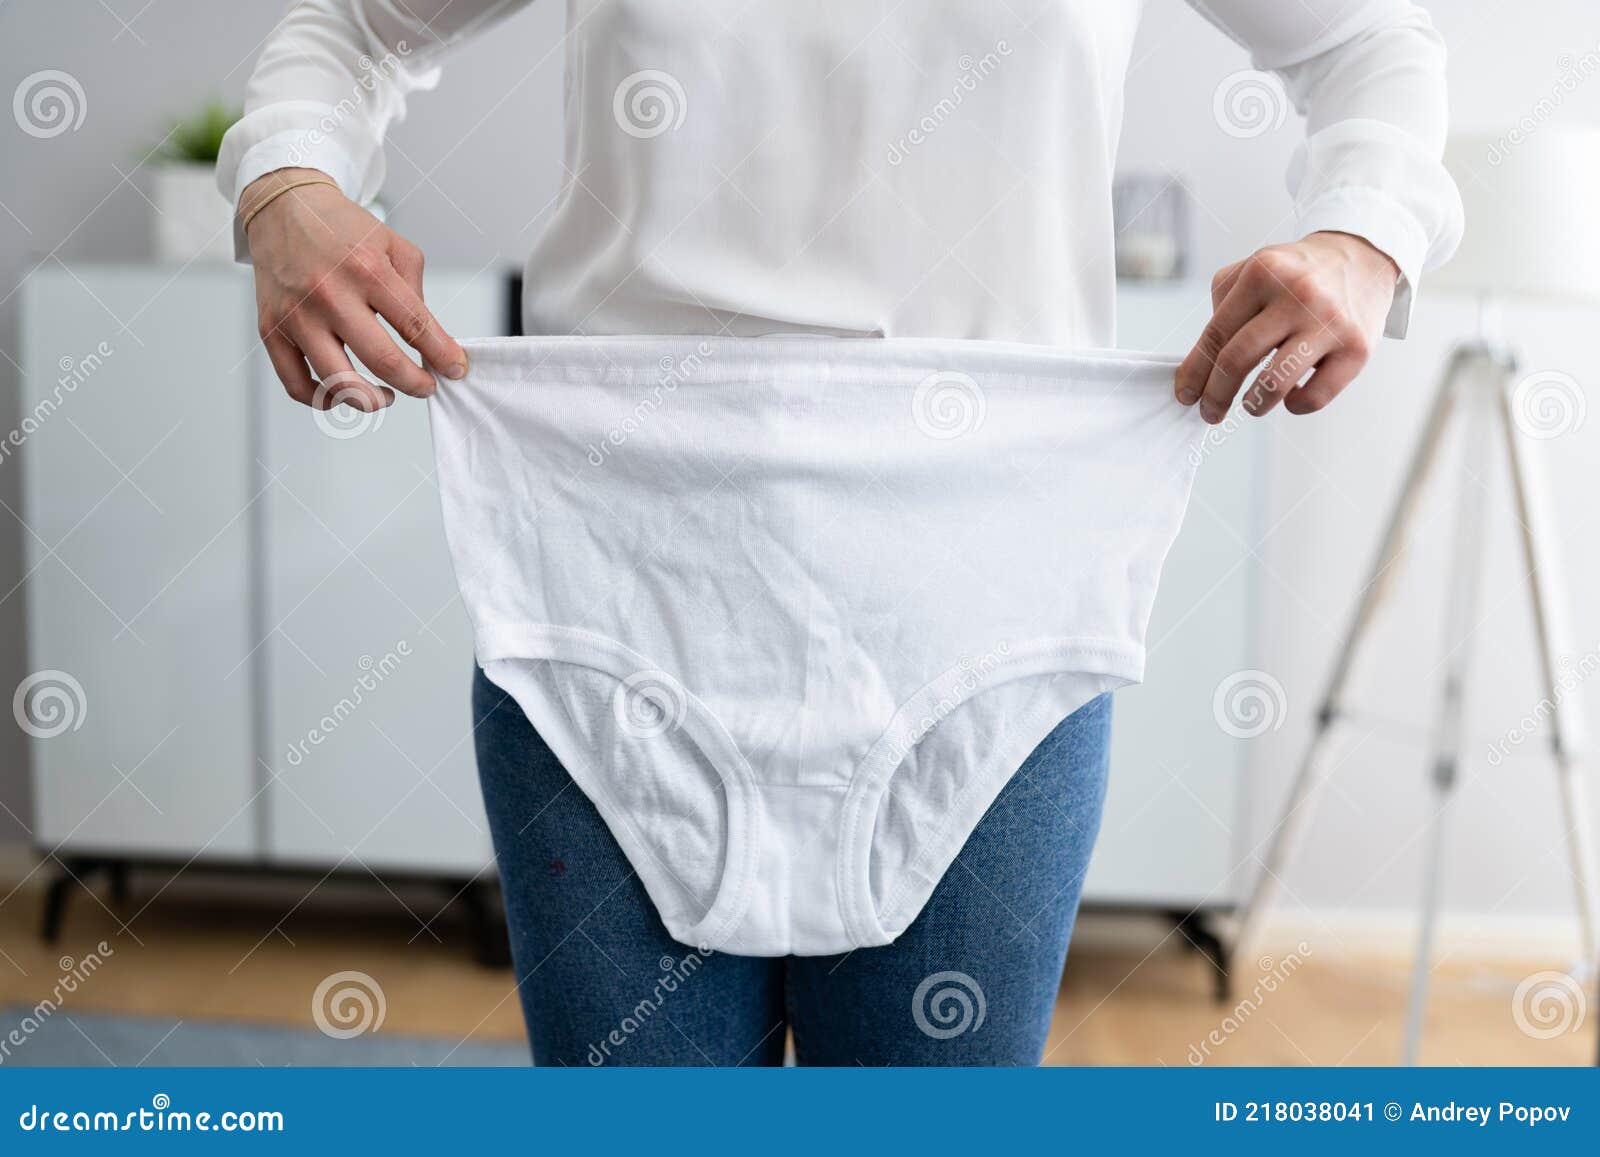 ava peoples add photo granny in underwear pics